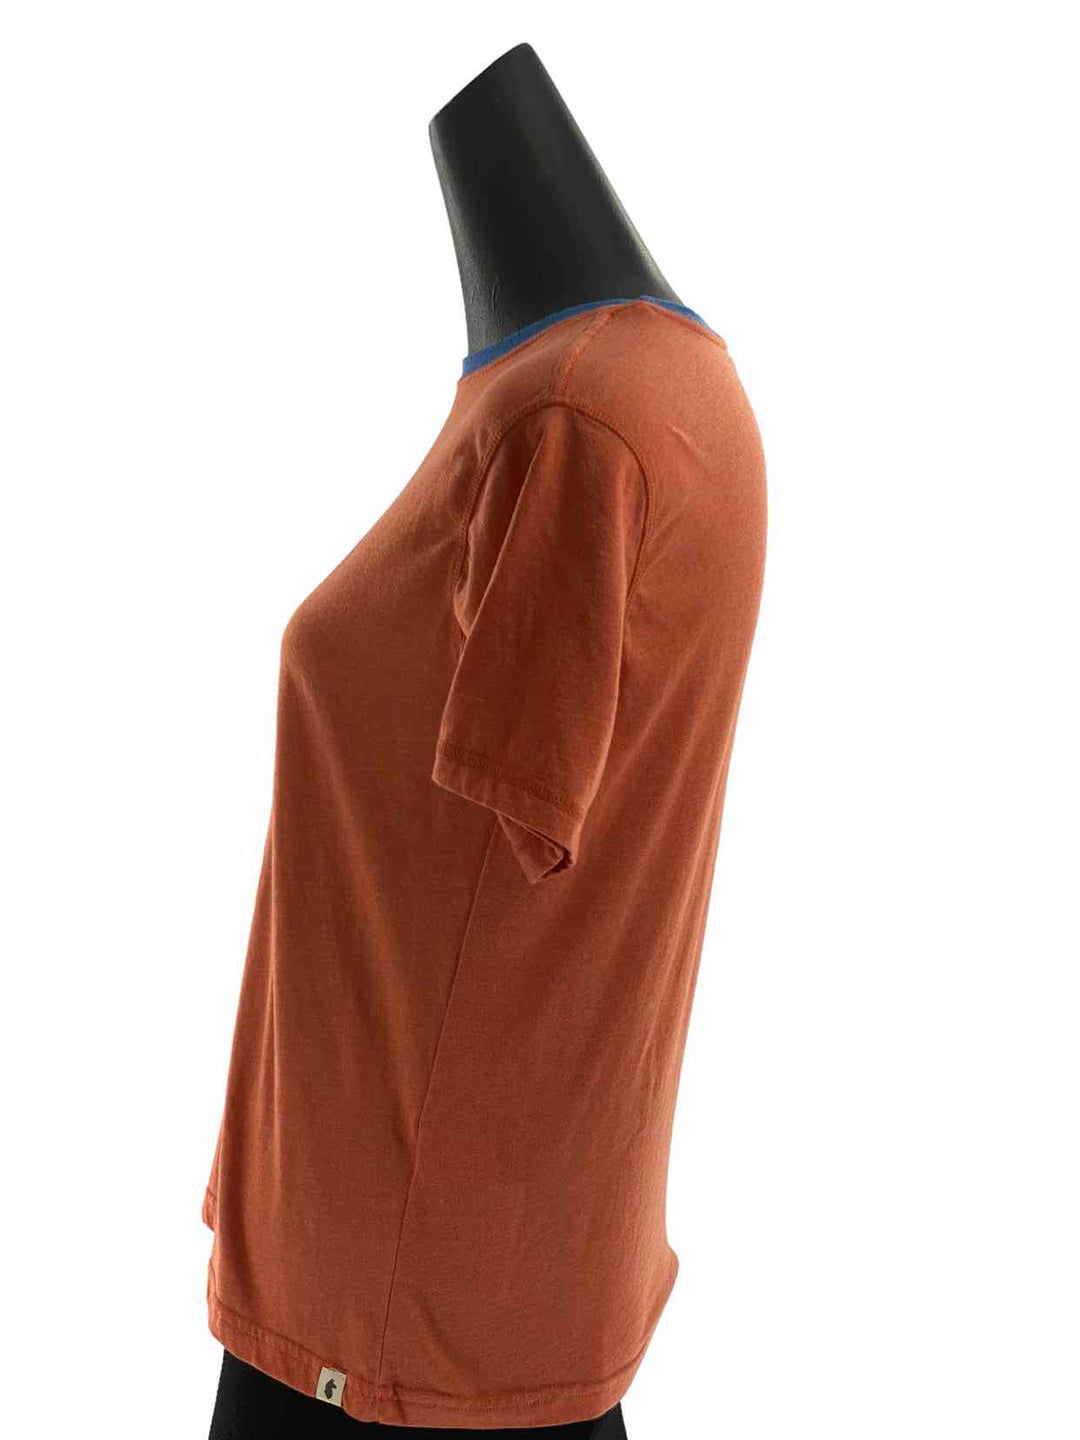 cotopaxi Size L Orange T-shirt